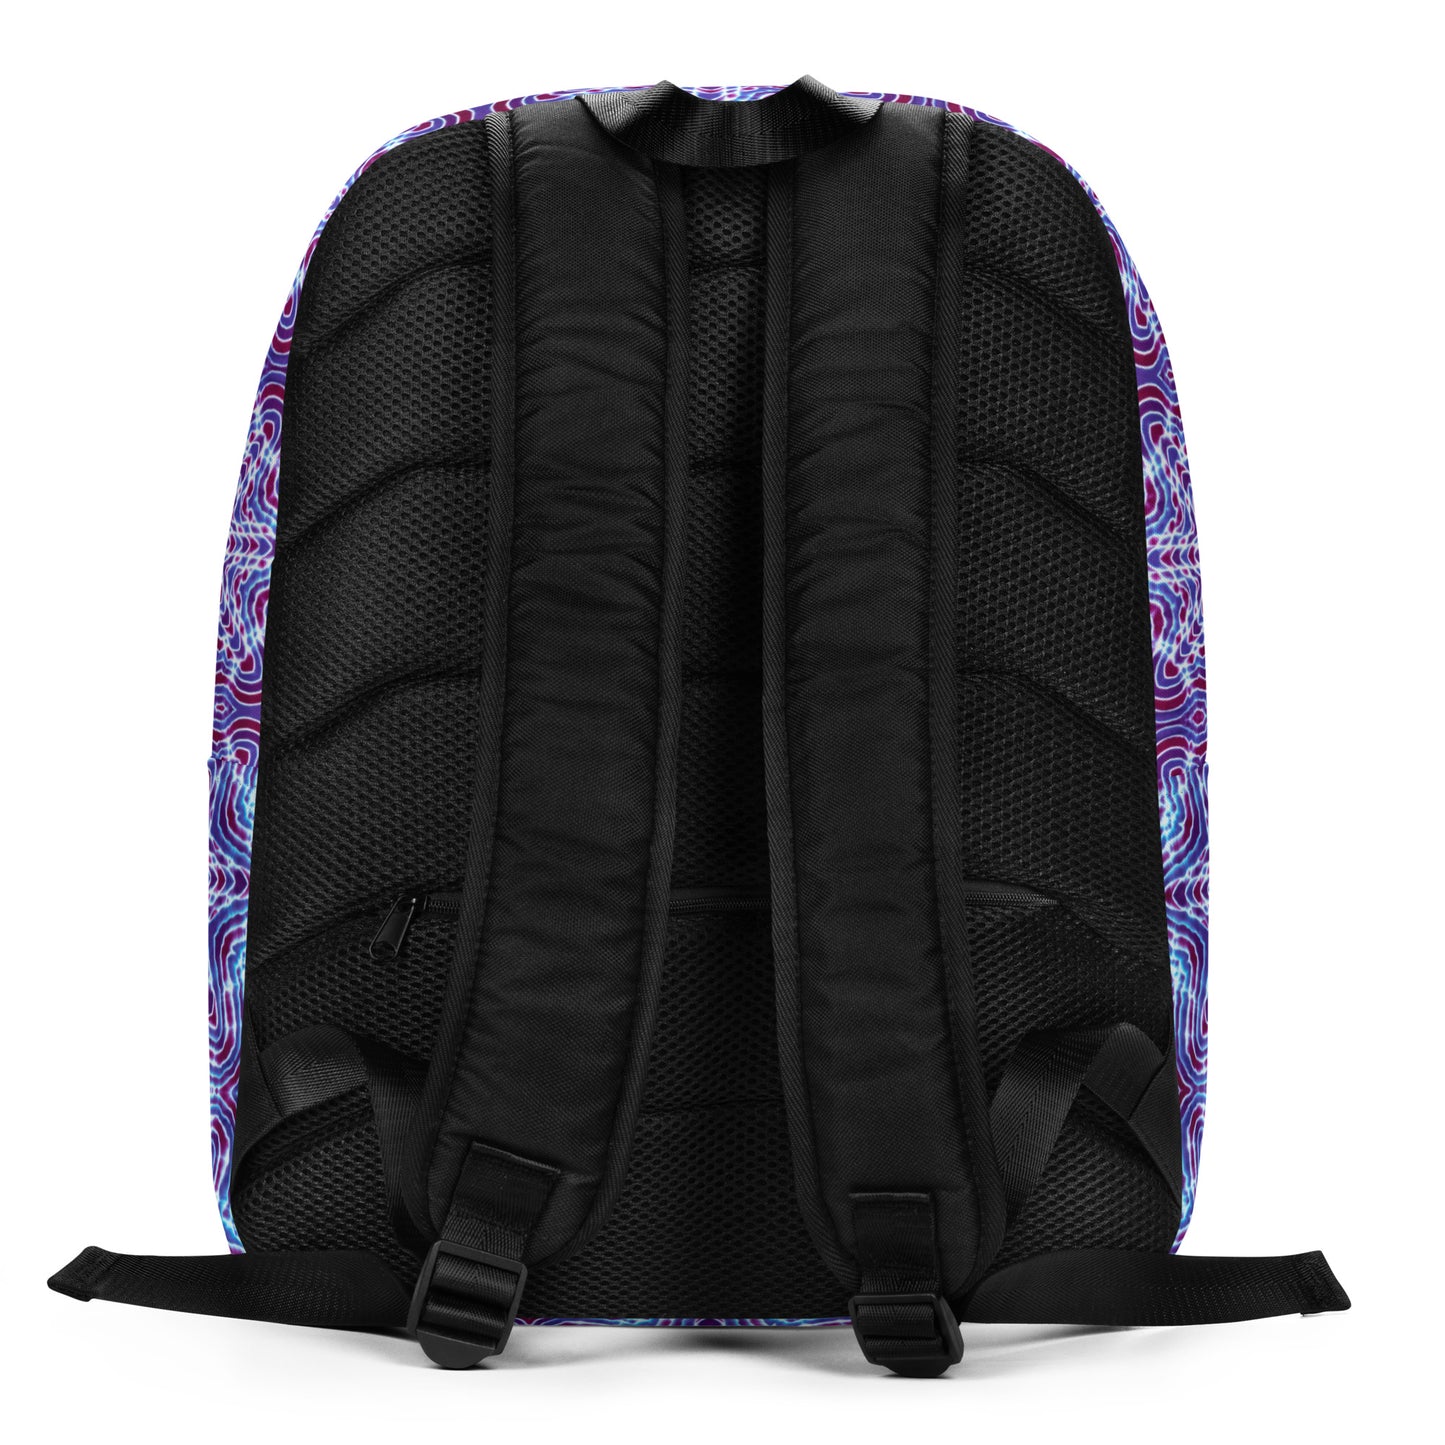 Tie Dye Print Backpack